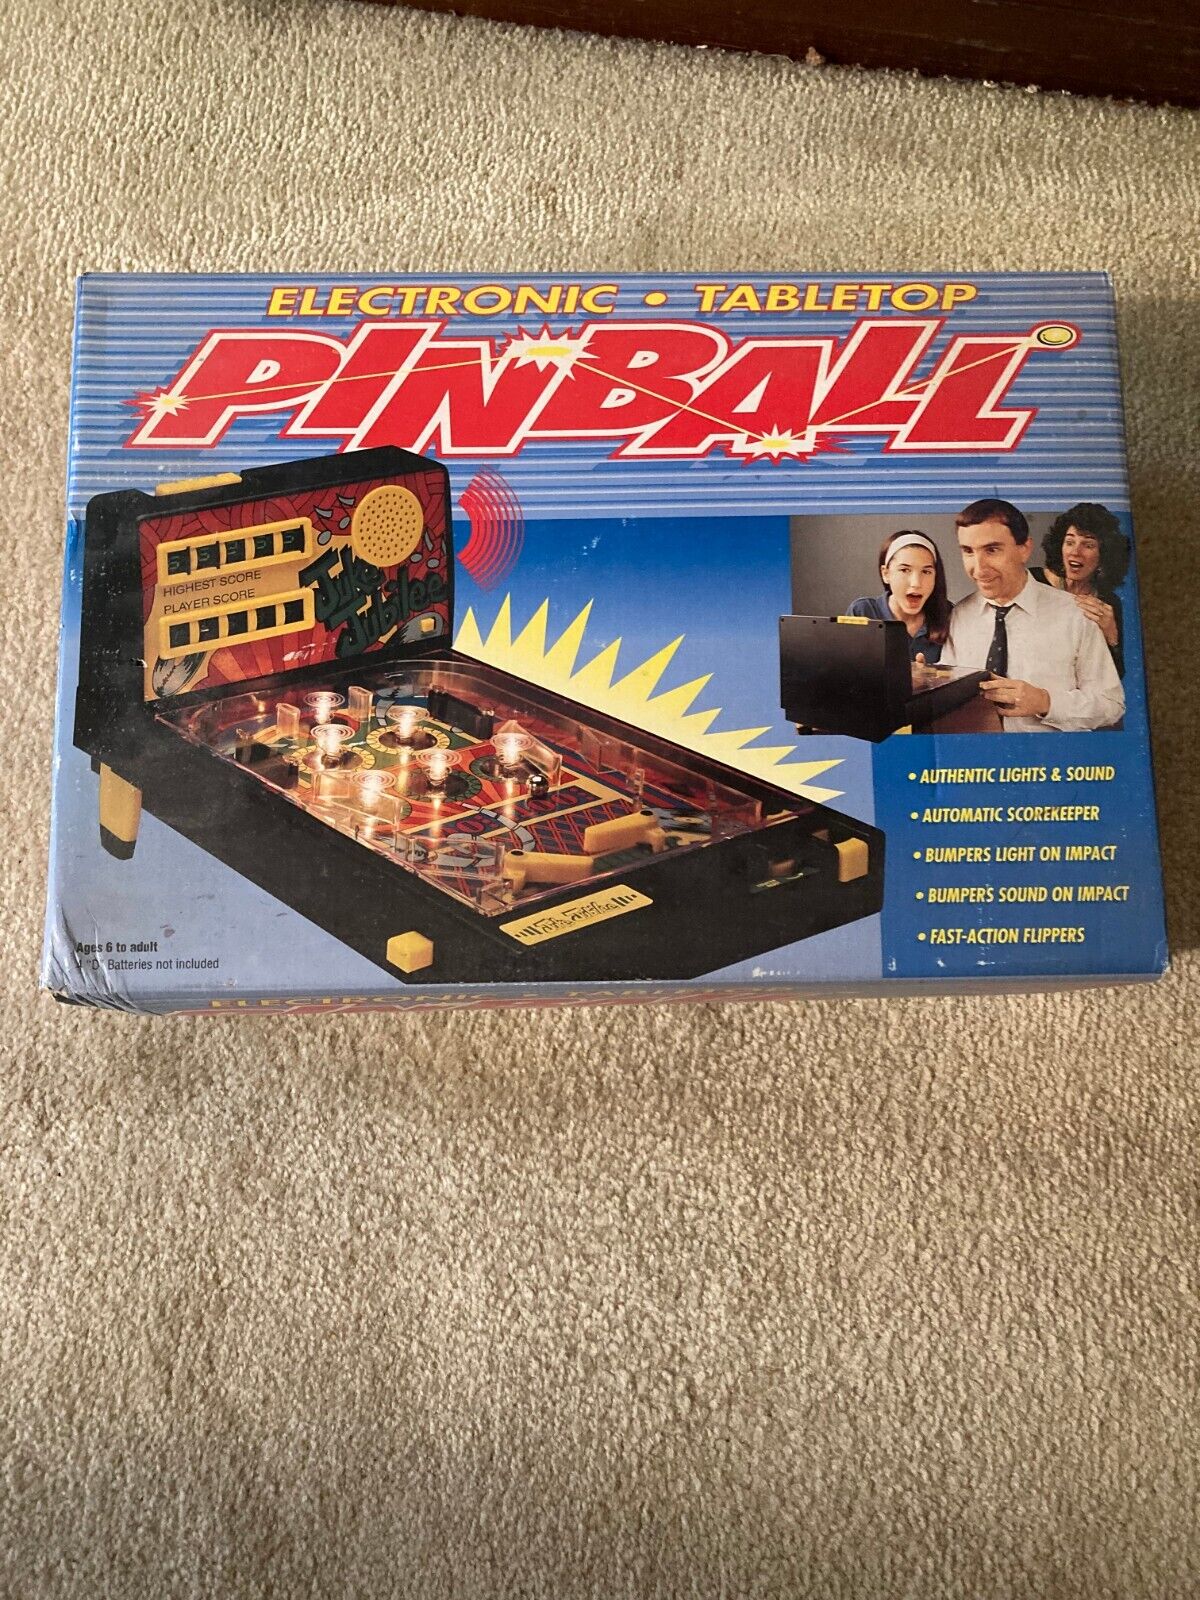 1979 Avon Juke Jubilee Tabletop Electronic Pinball Arcade Game Unopened